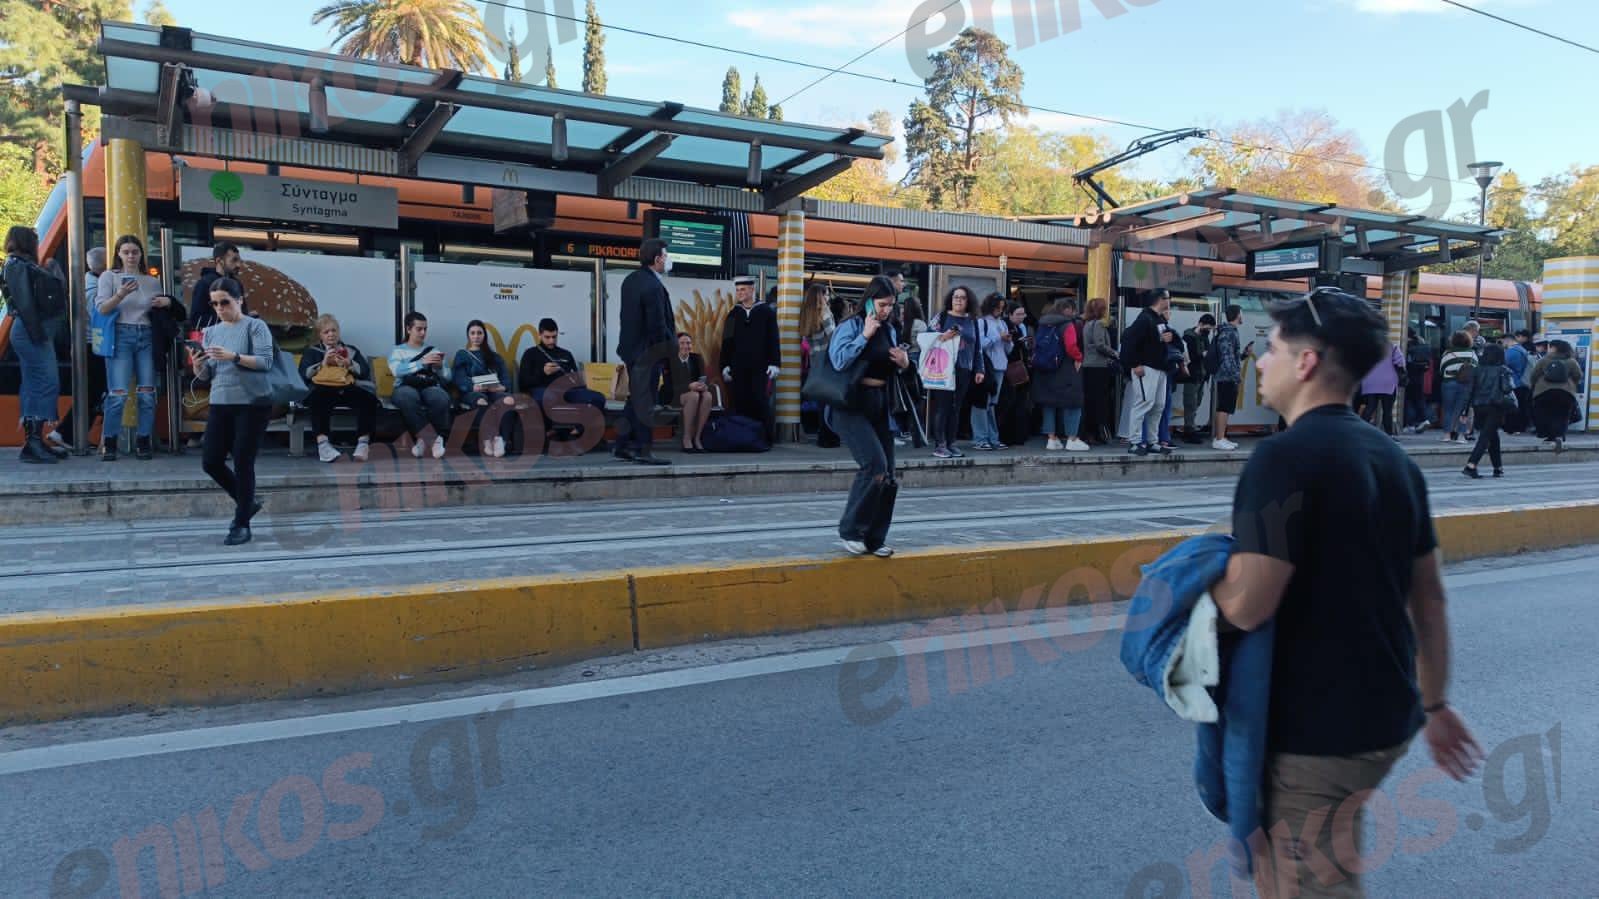 Πτώση ατόμου στις ράγες του μετρό «Συγγρού Φιξ» – Αποκαταστάθηκε η κυκλοφορία στην γραμμή – Δείτε ΒΙΝΤΕΟ